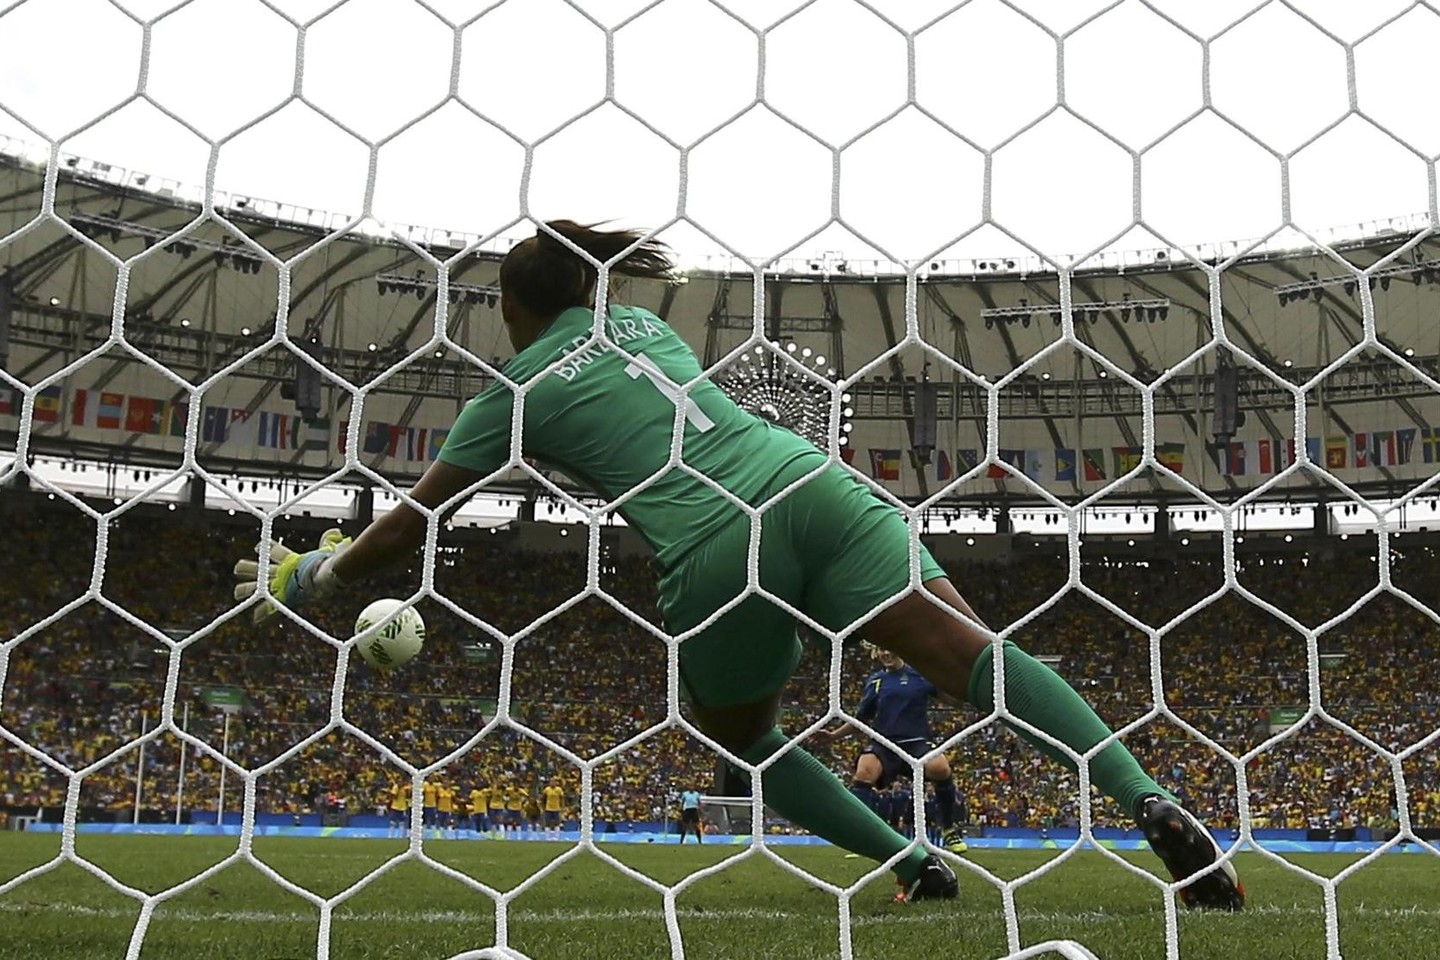 Brazlijos futbolininkės pralaimėjo švedėms olimpiados pusfinalyje.<br>AFP/“Scanpix“ nuotr.